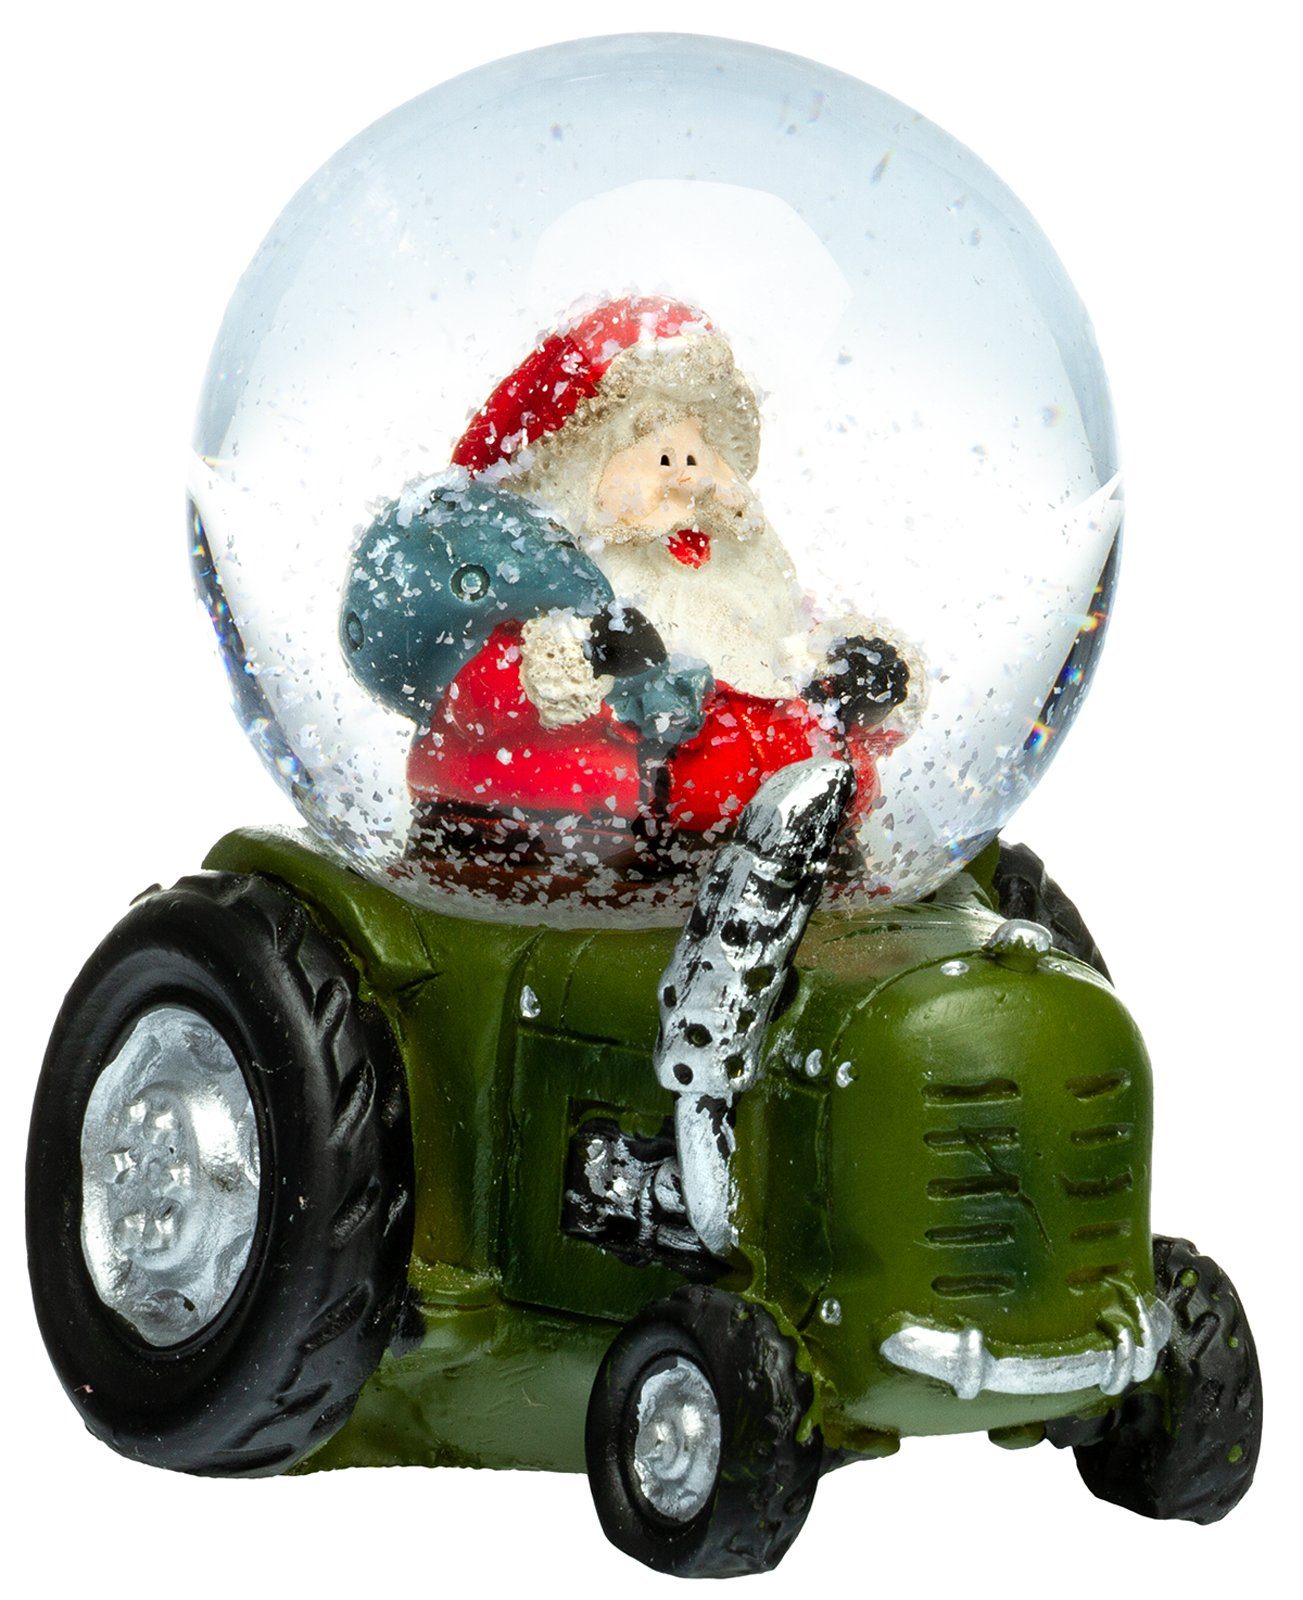 SIKORA Schneekugel »SK01 Kleine Glas Schneekugel für Kinder Weihnachtsmann  auf dem Traktor D:45mm« online kaufen | OTTO